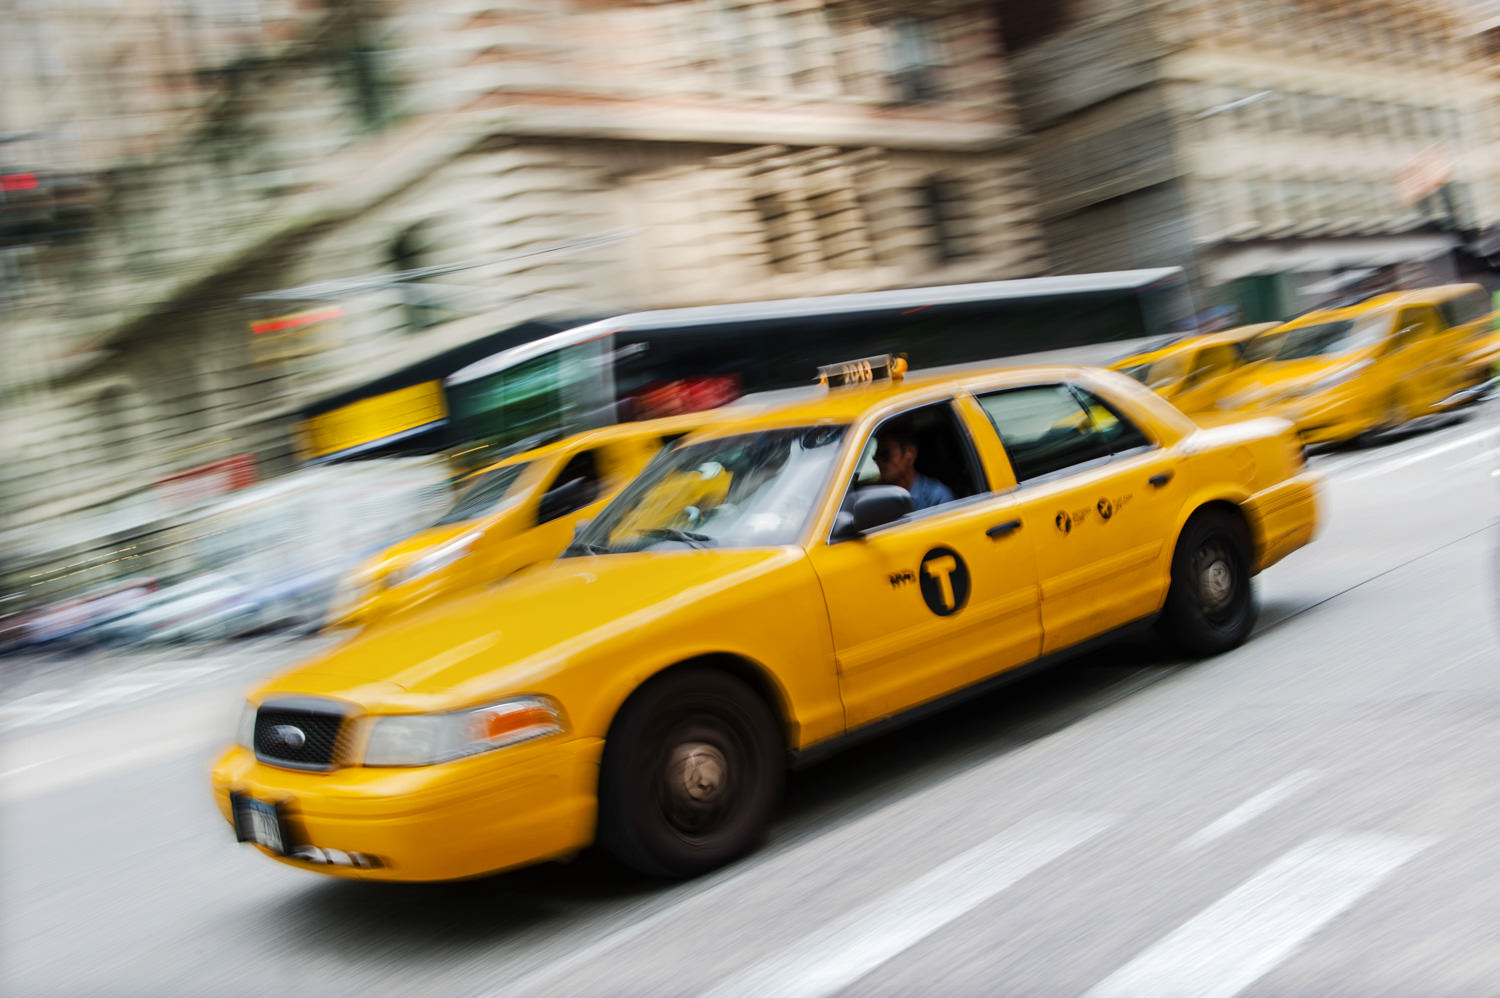 En kliché, jeg havde planlagt allerede hjemmefra. En vaskeægte, gul New York-taxi. Jeg tror, de færreste er i tvivl om, hvor i verden, vi befinder os. Dette er historien om, følelsen og fornemmelsen af, New York, vi genkender.